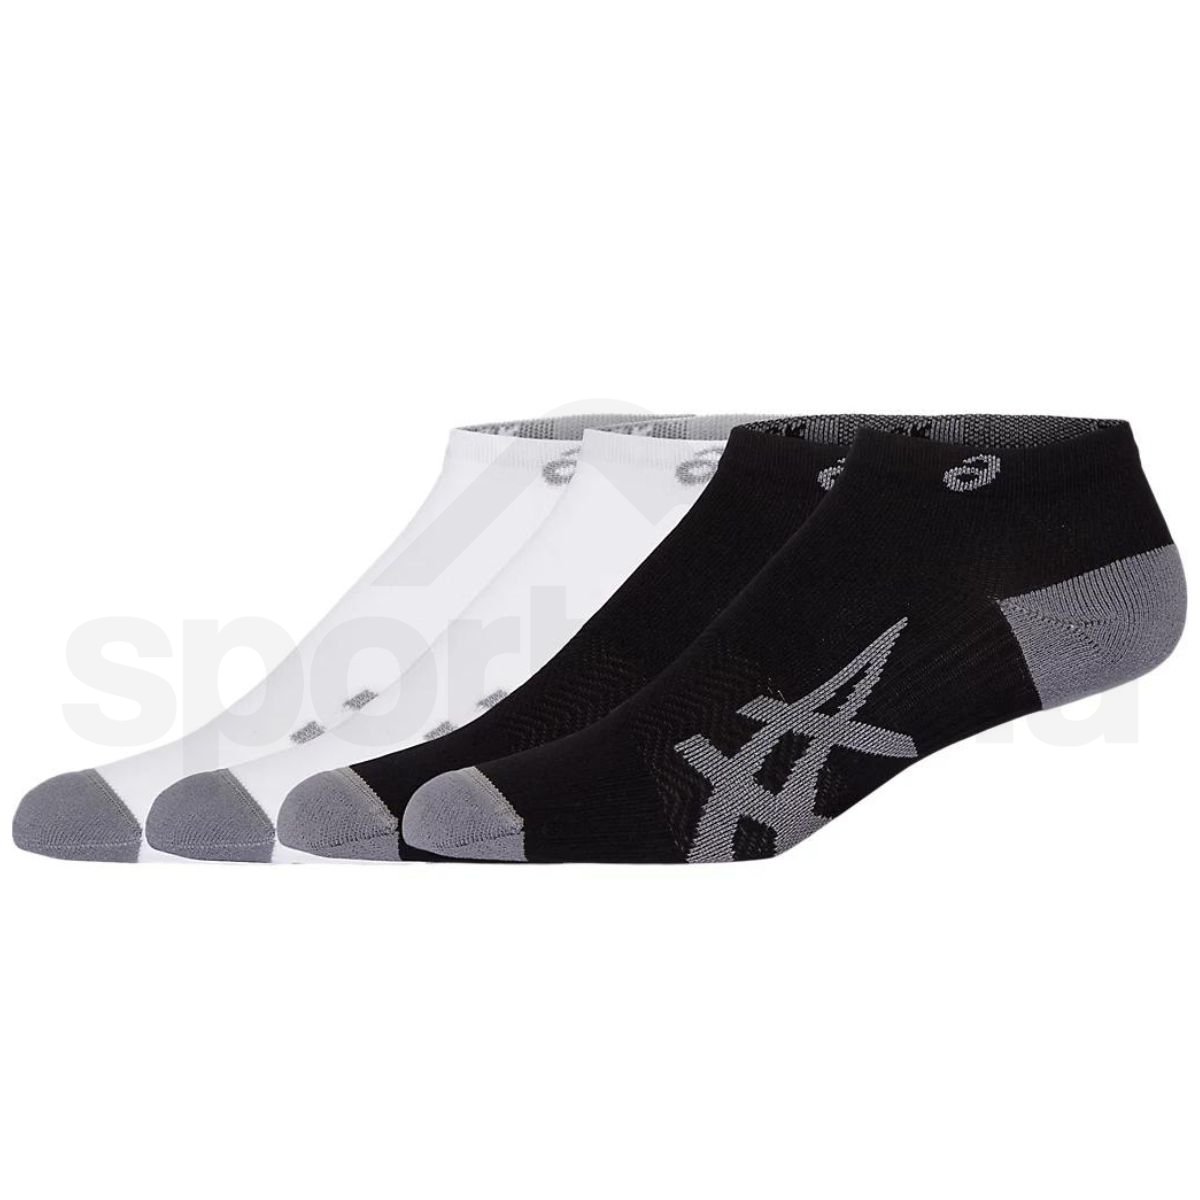 Ponožky Asics 2PPK Light Run Ankle Sock - černá/bílá